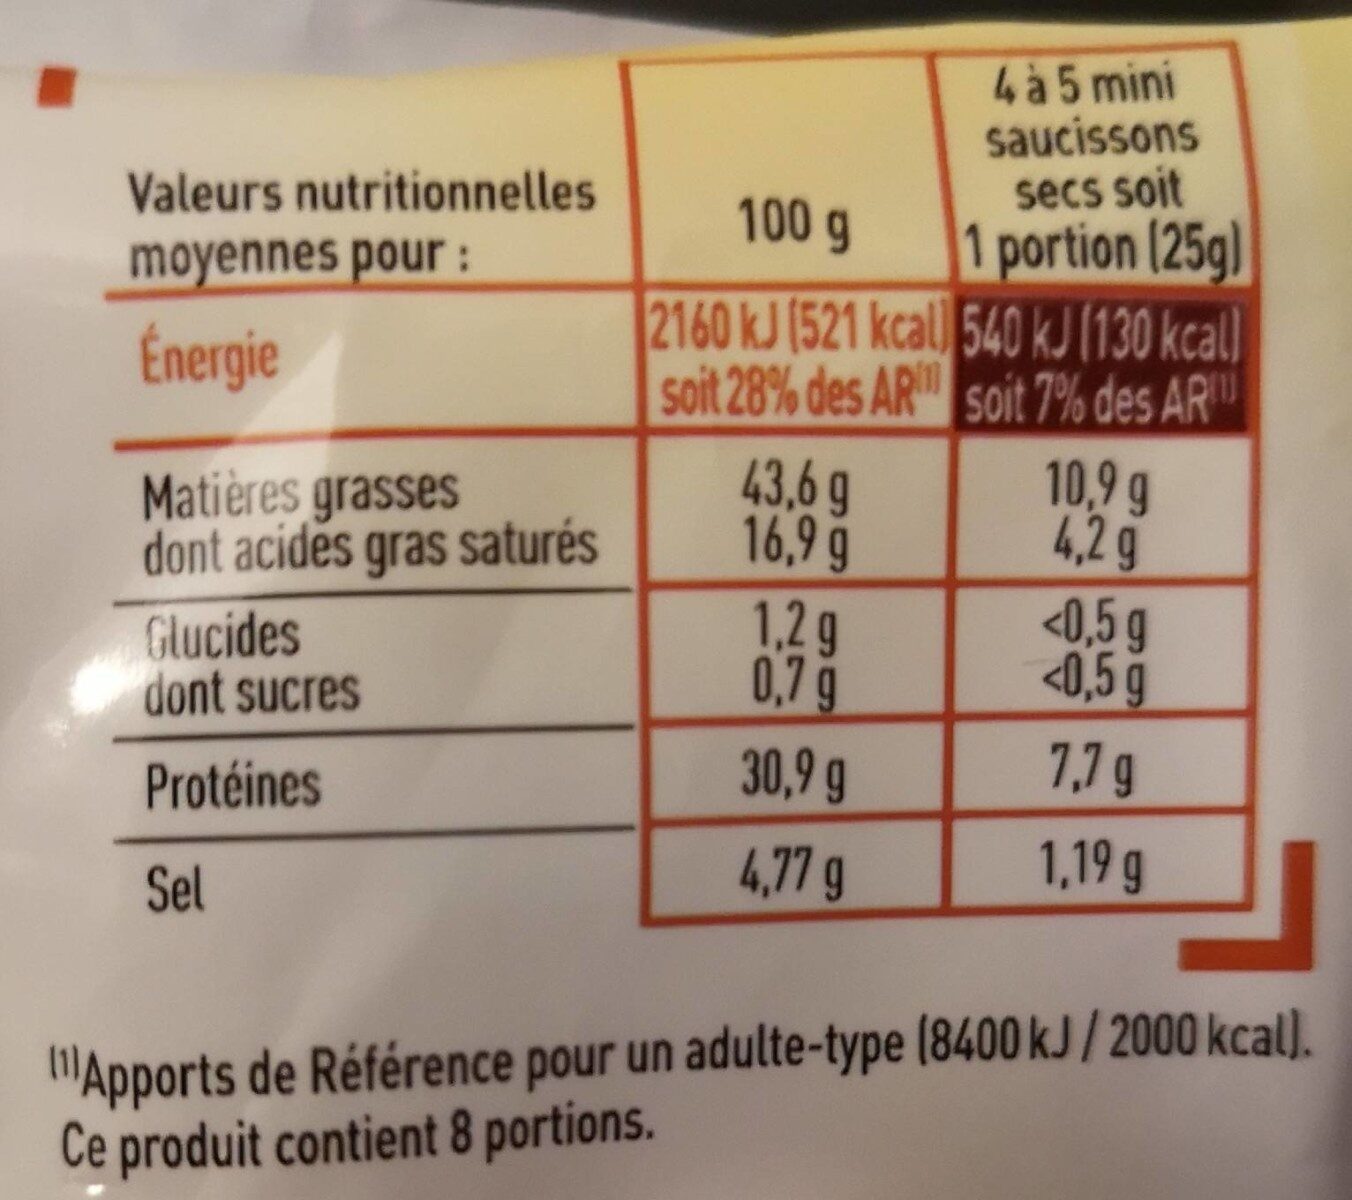 Mini saucissons secs nature - Nutrition facts - fr